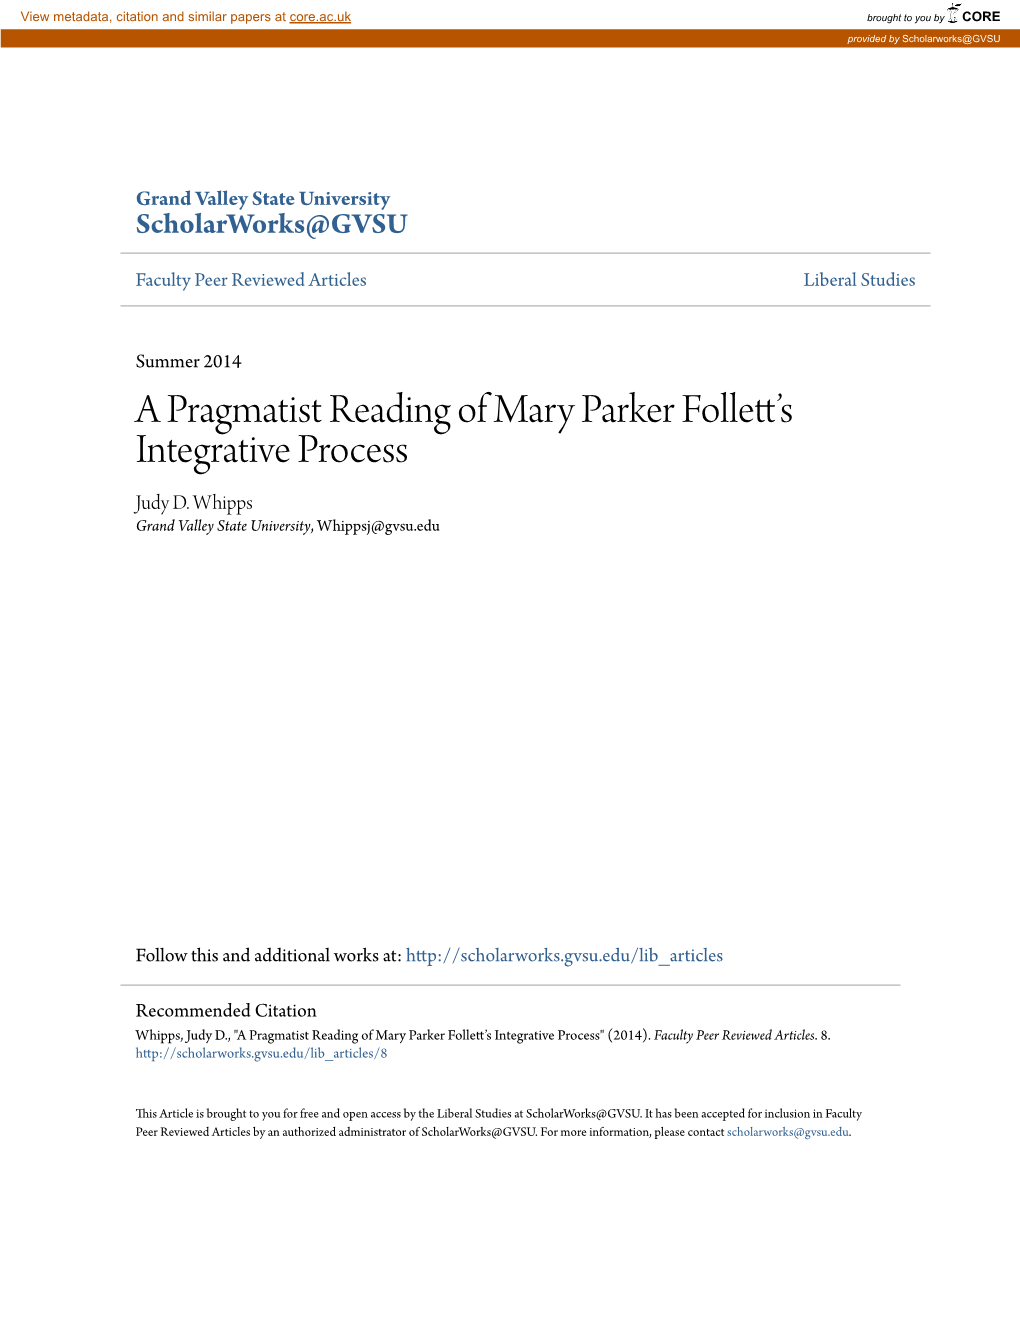 A Pragmatist Reading of Mary Parker Follett's Integrative Process